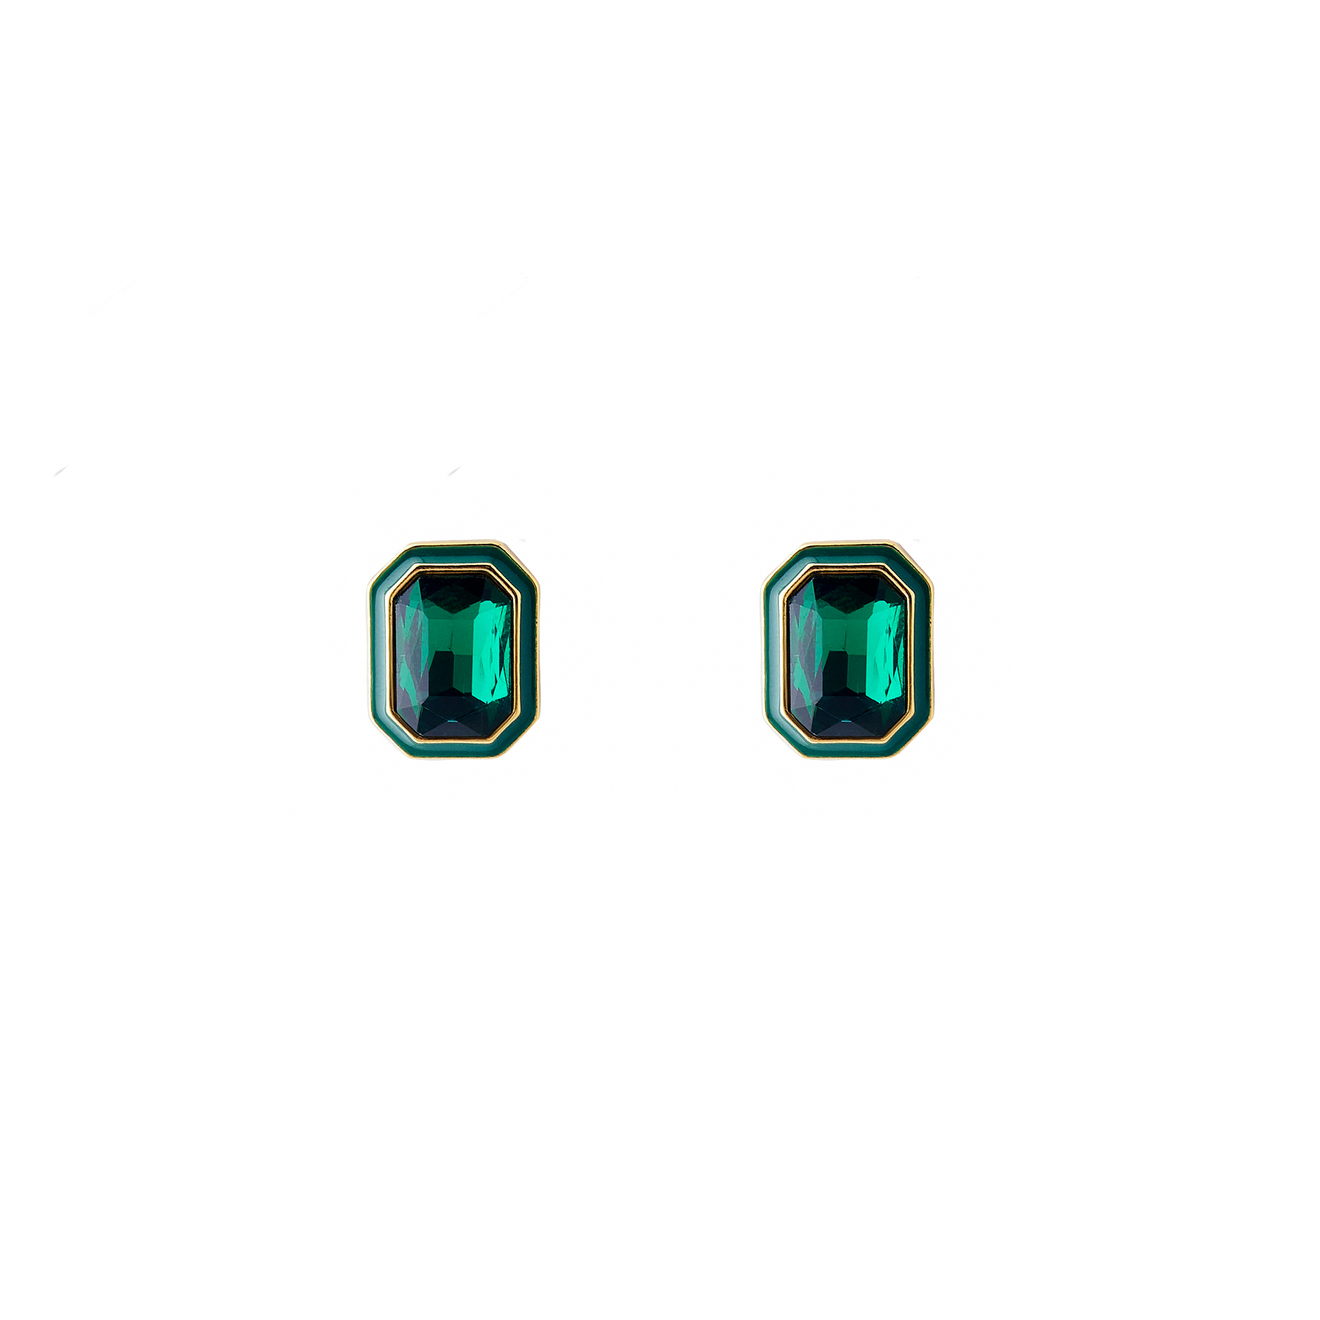 Herald Percy Крупные золотистые серьги с зелеными кристаллами и зеленой эмалью vanessa baroni золотистые крупные серьги со звеньями